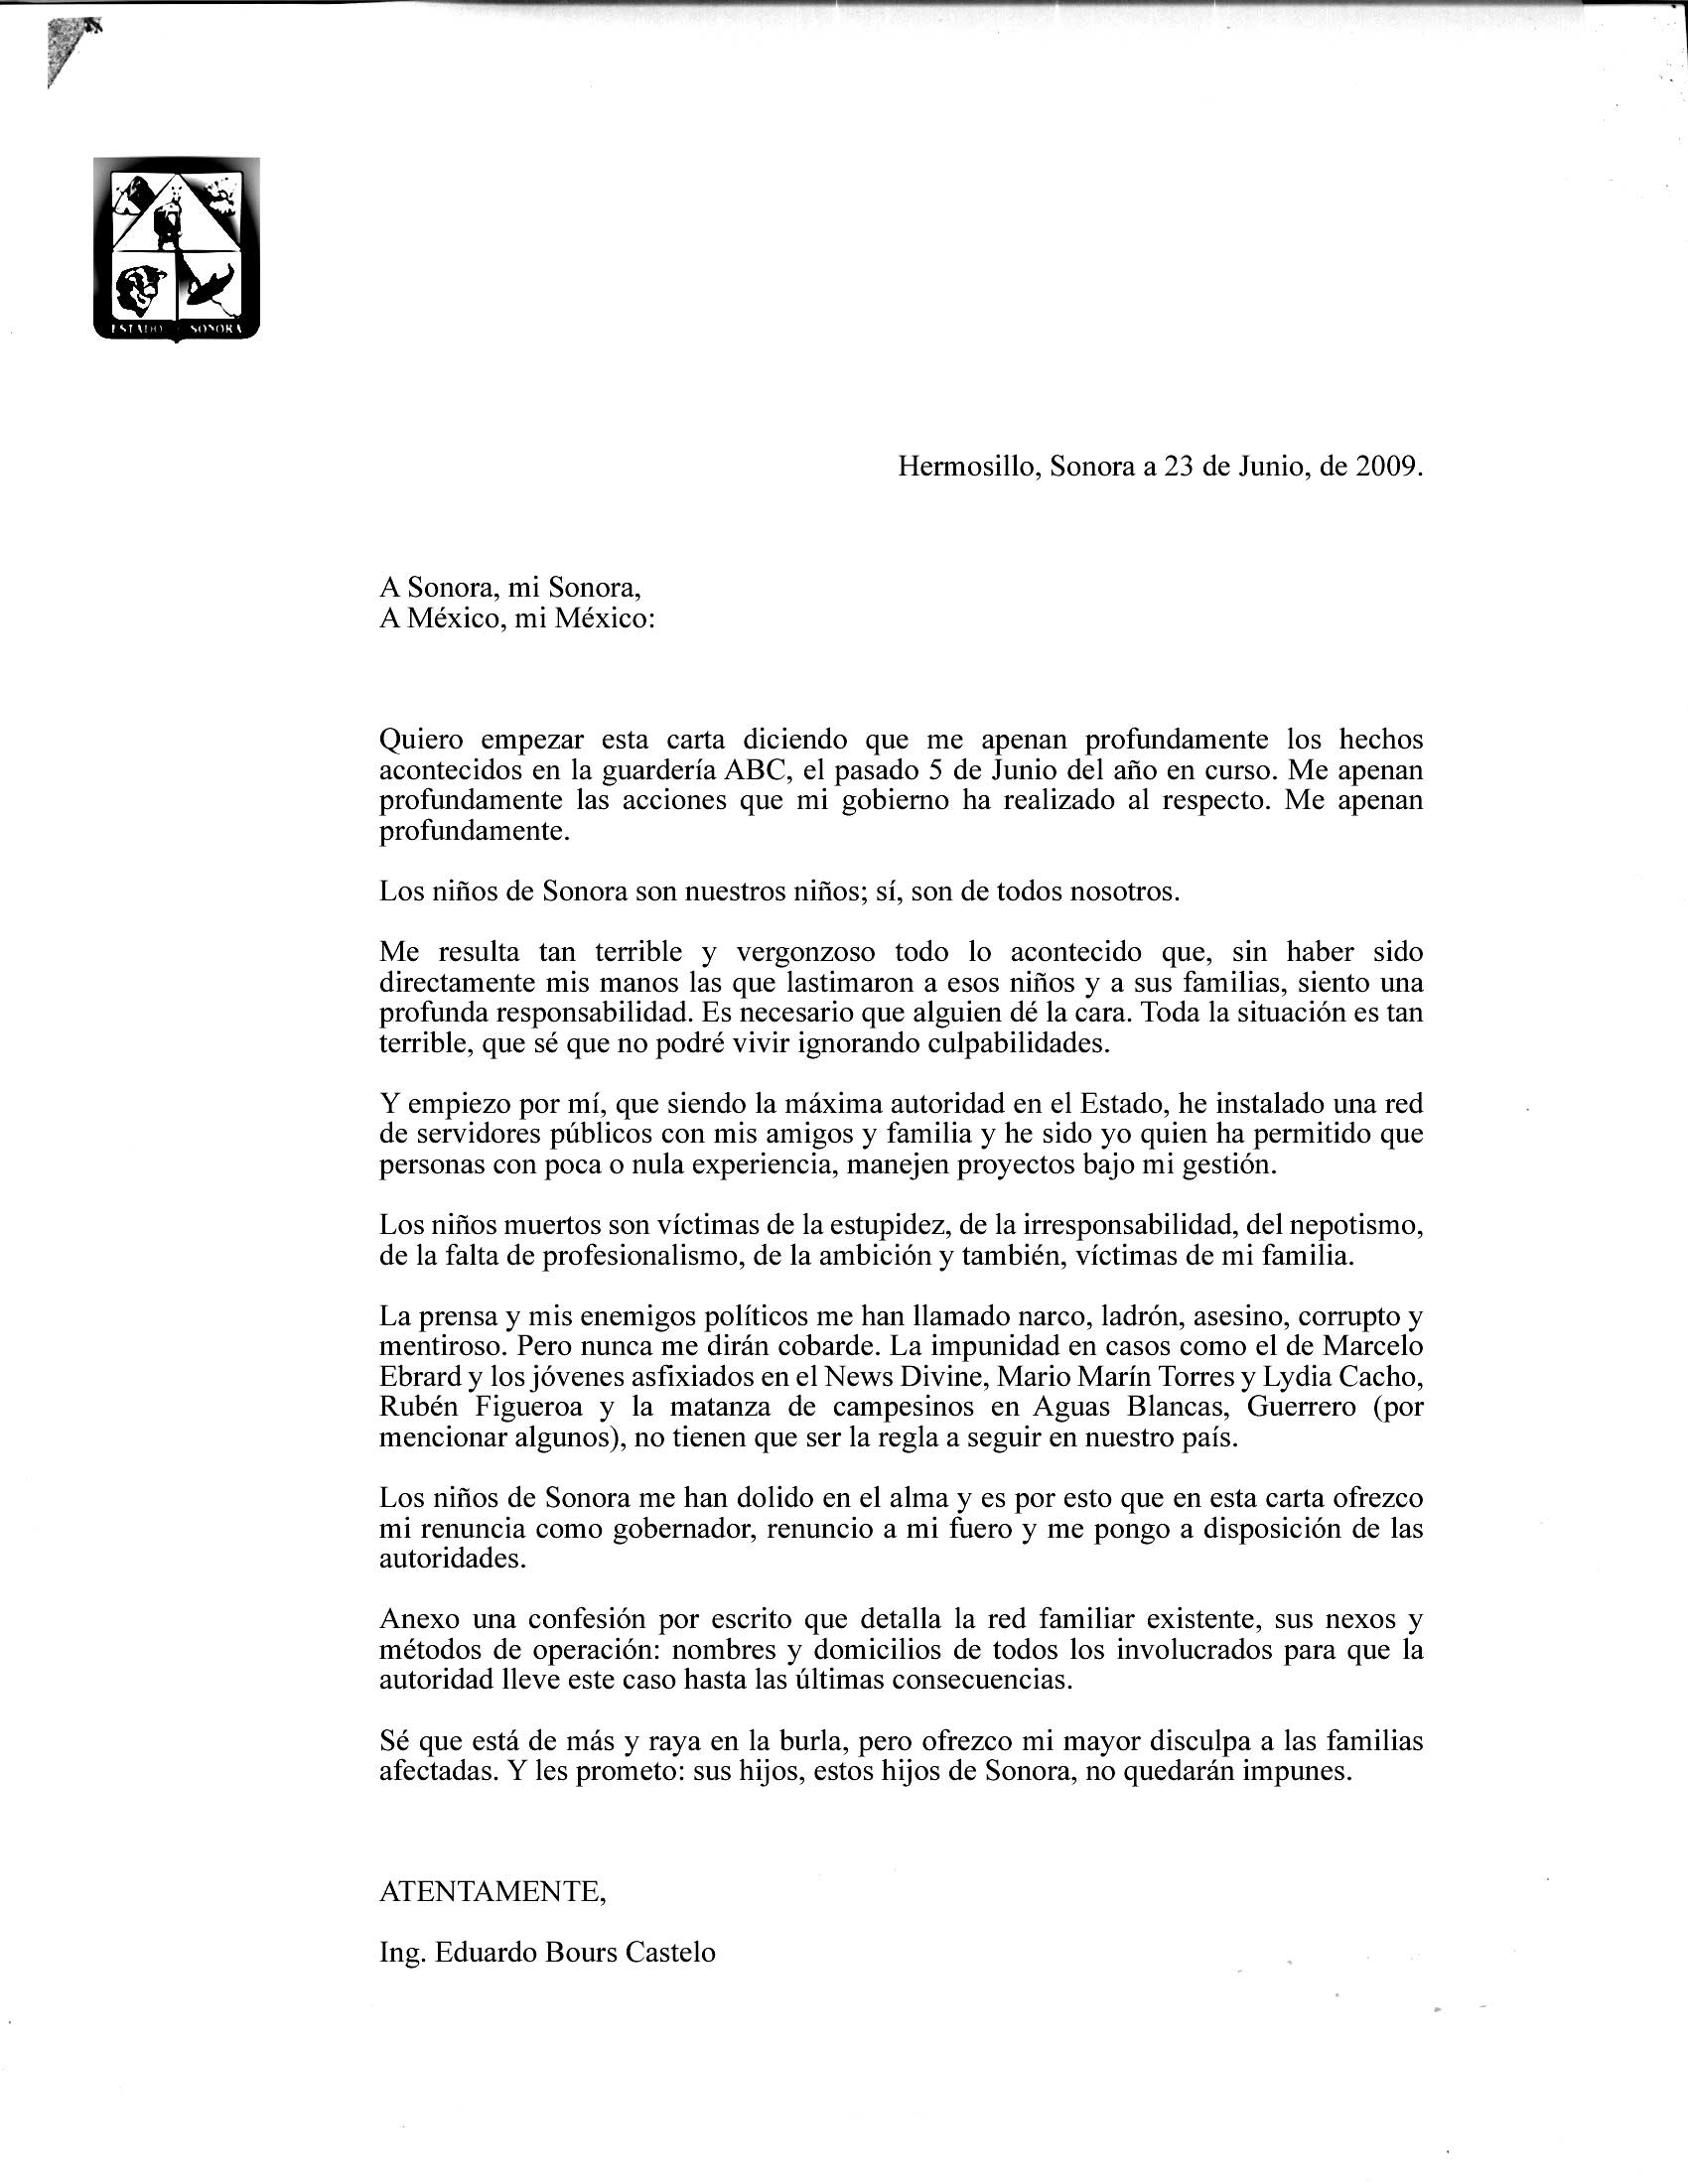 Carta de renuncia de Eduardo Bours al gobierno de Sonora 